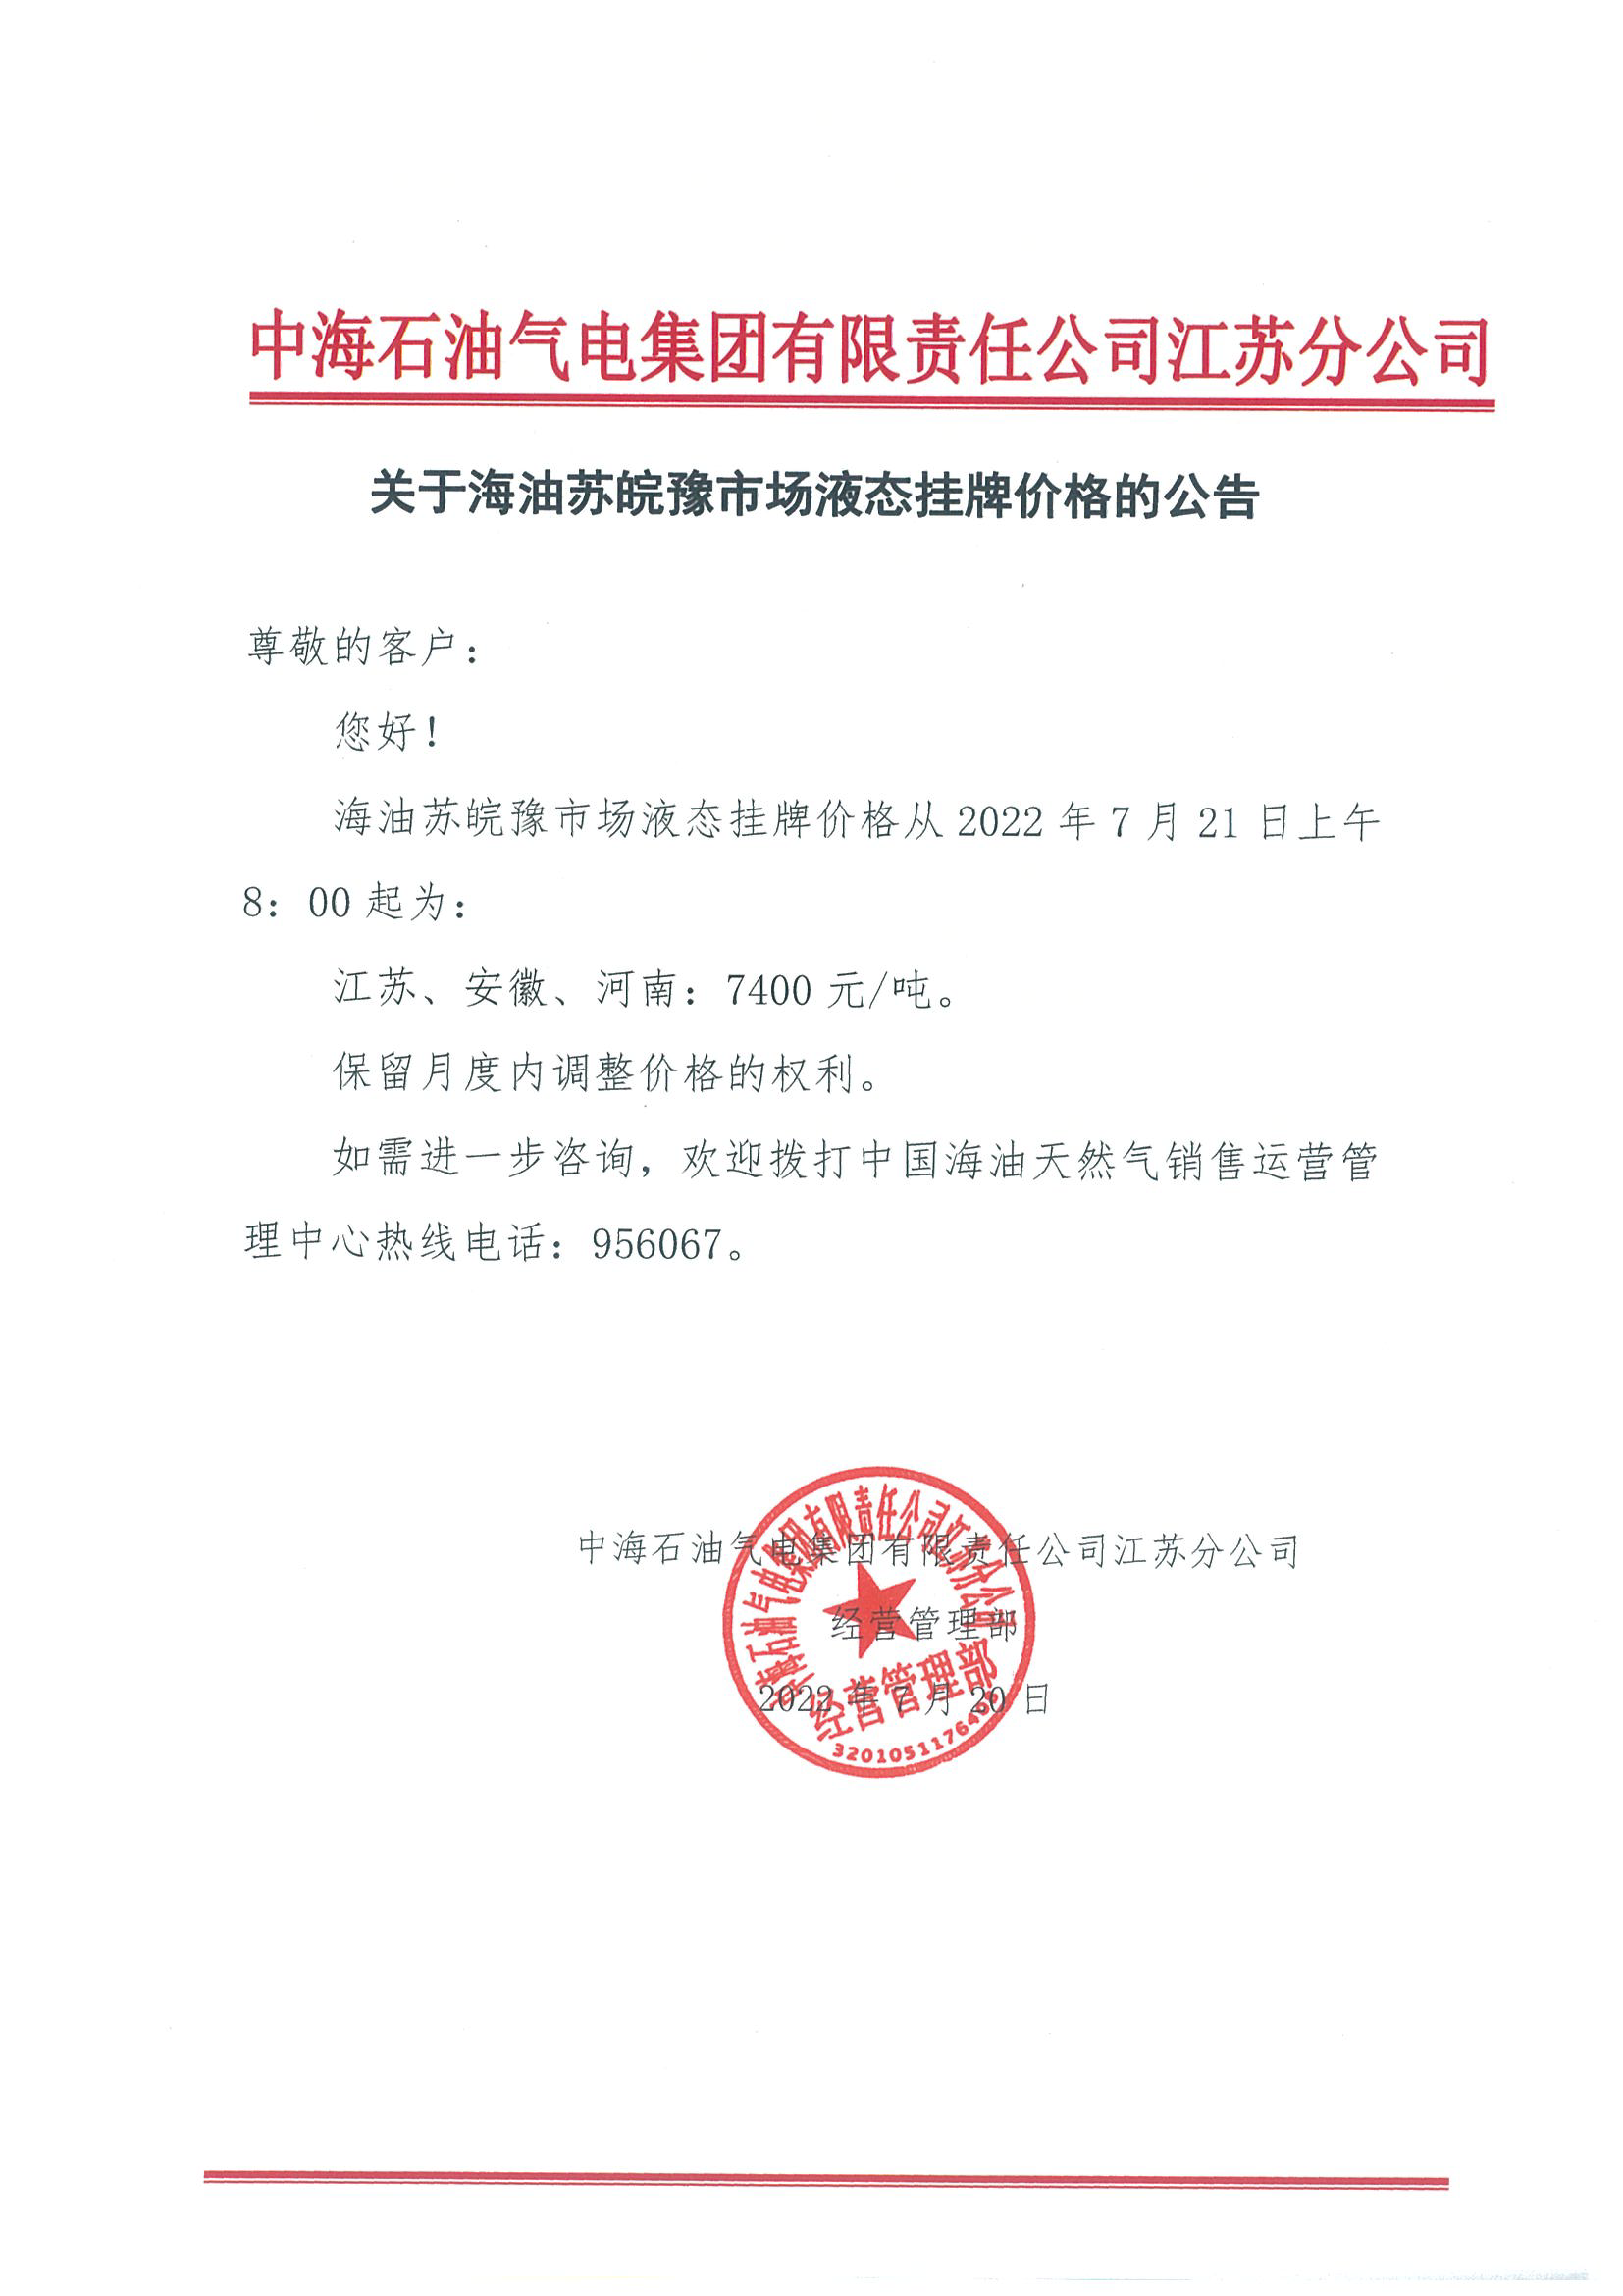 中海油江苏分公司关于7月21日华东苏皖市场价格调整公告.png